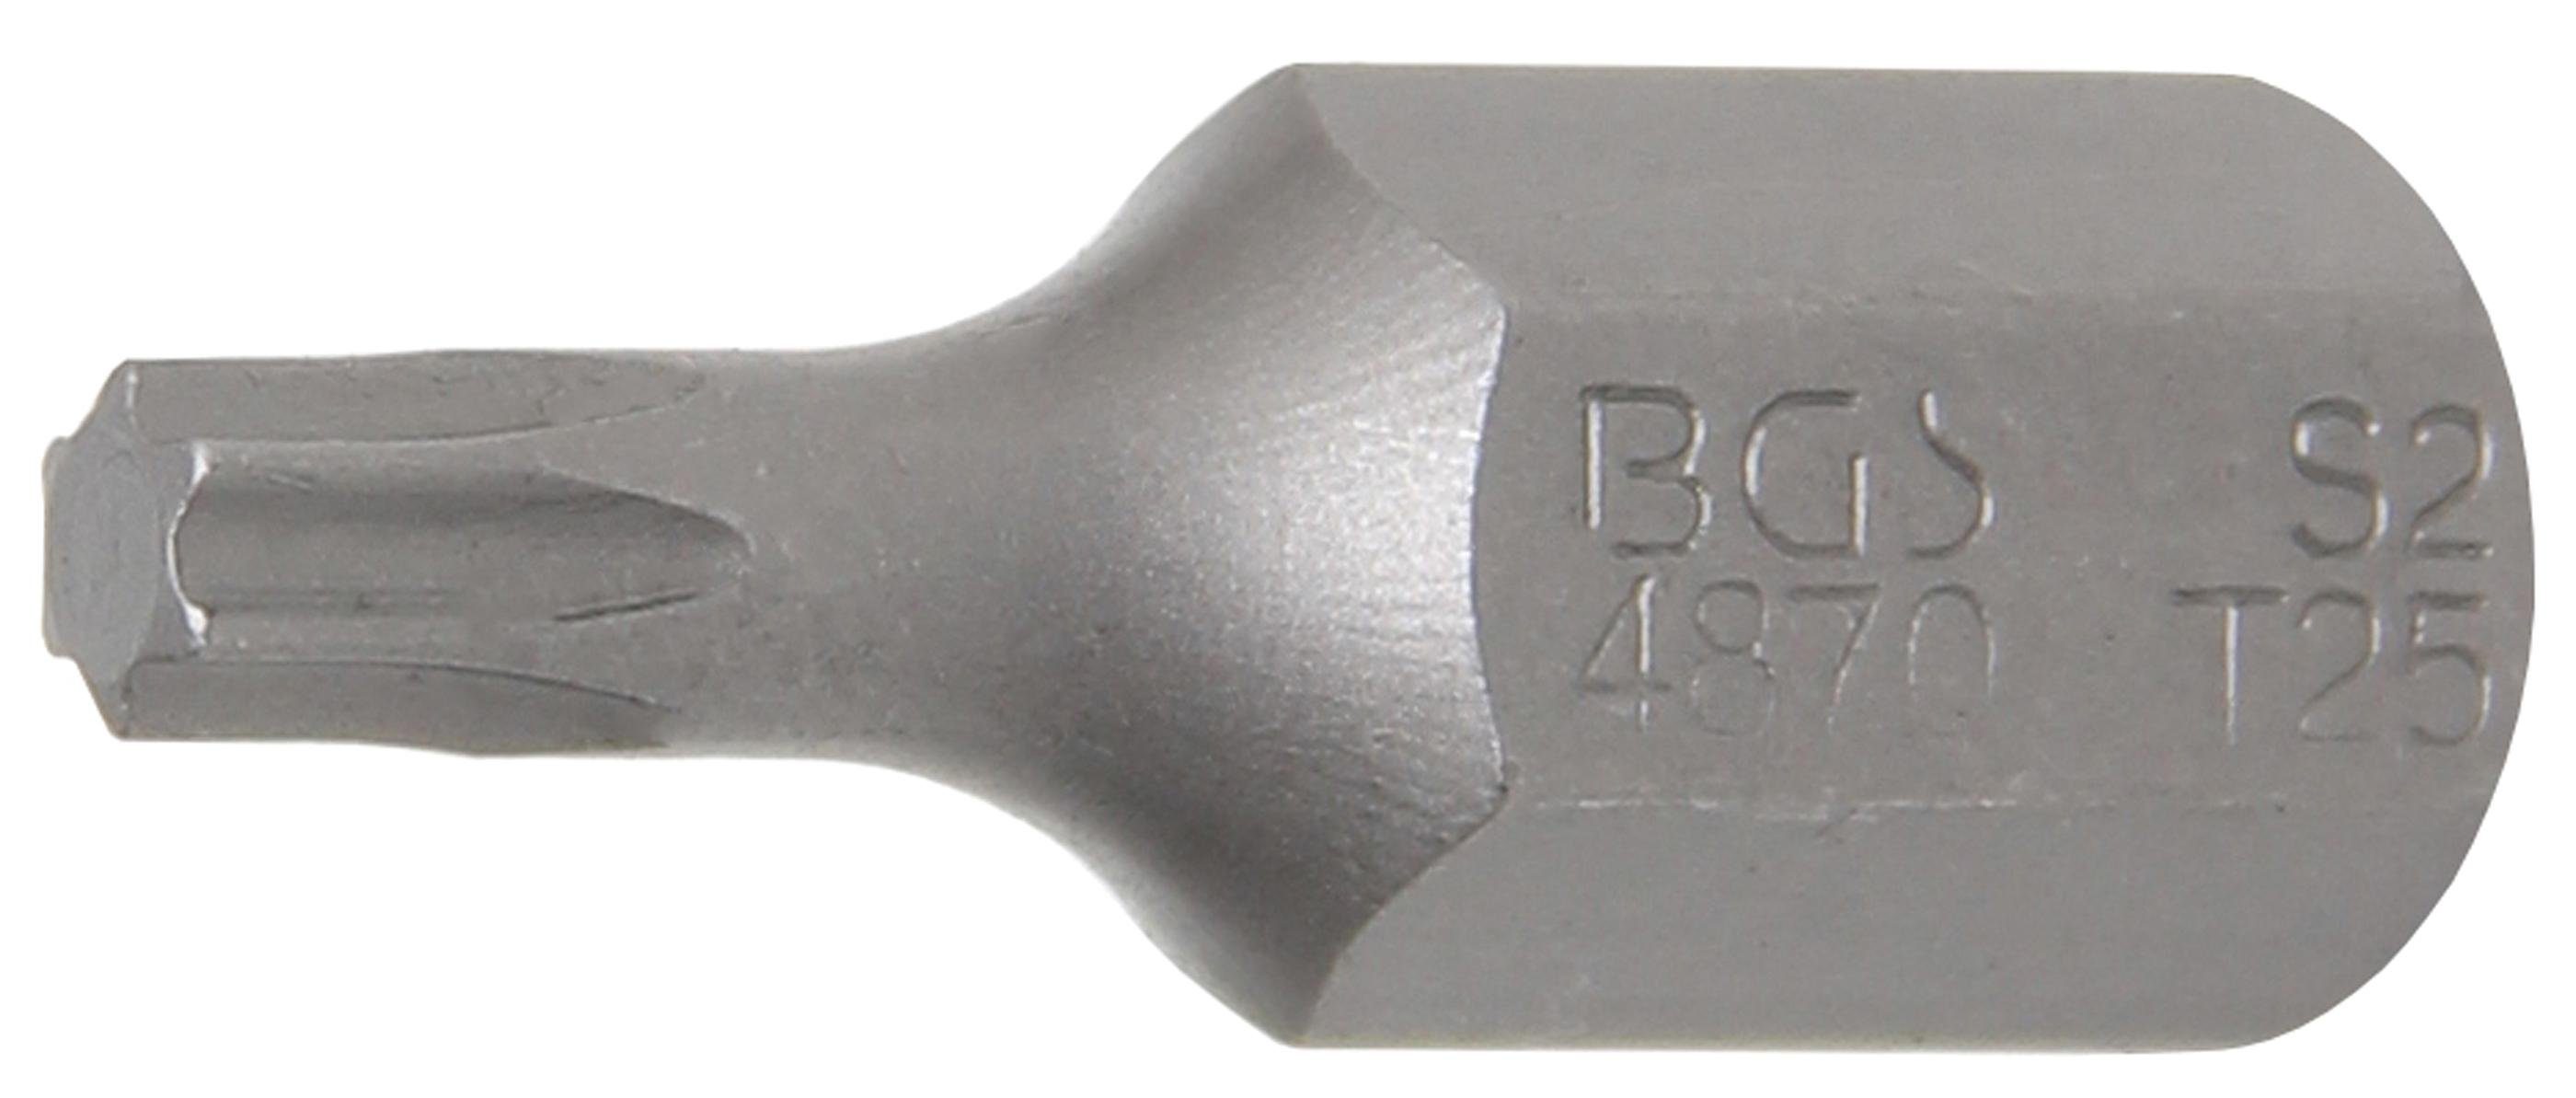 BGS technic Bit-Schraubendreher Bit, Antrieb Außensechskant 10 mm (3/8), T-Profil (für Torx) T25